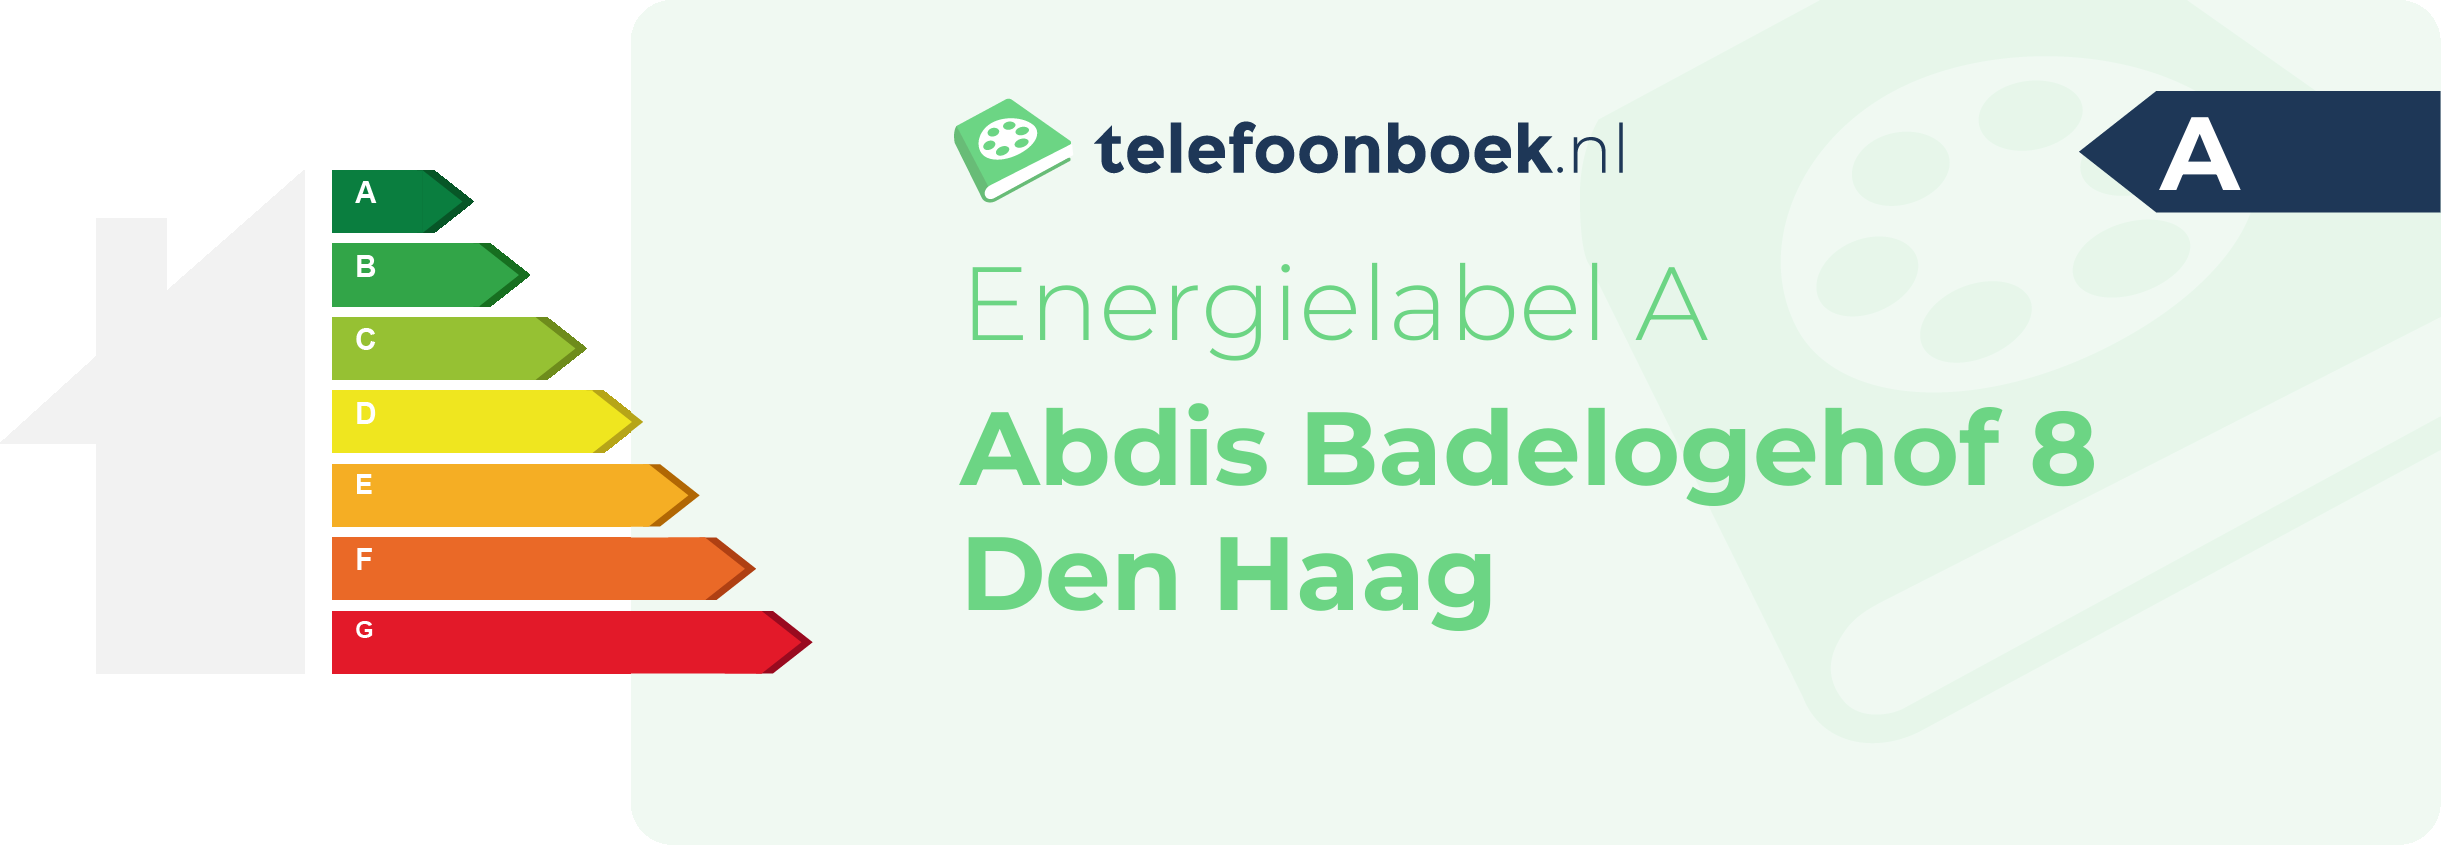 Energielabel Abdis Badelogehof 8 Den Haag